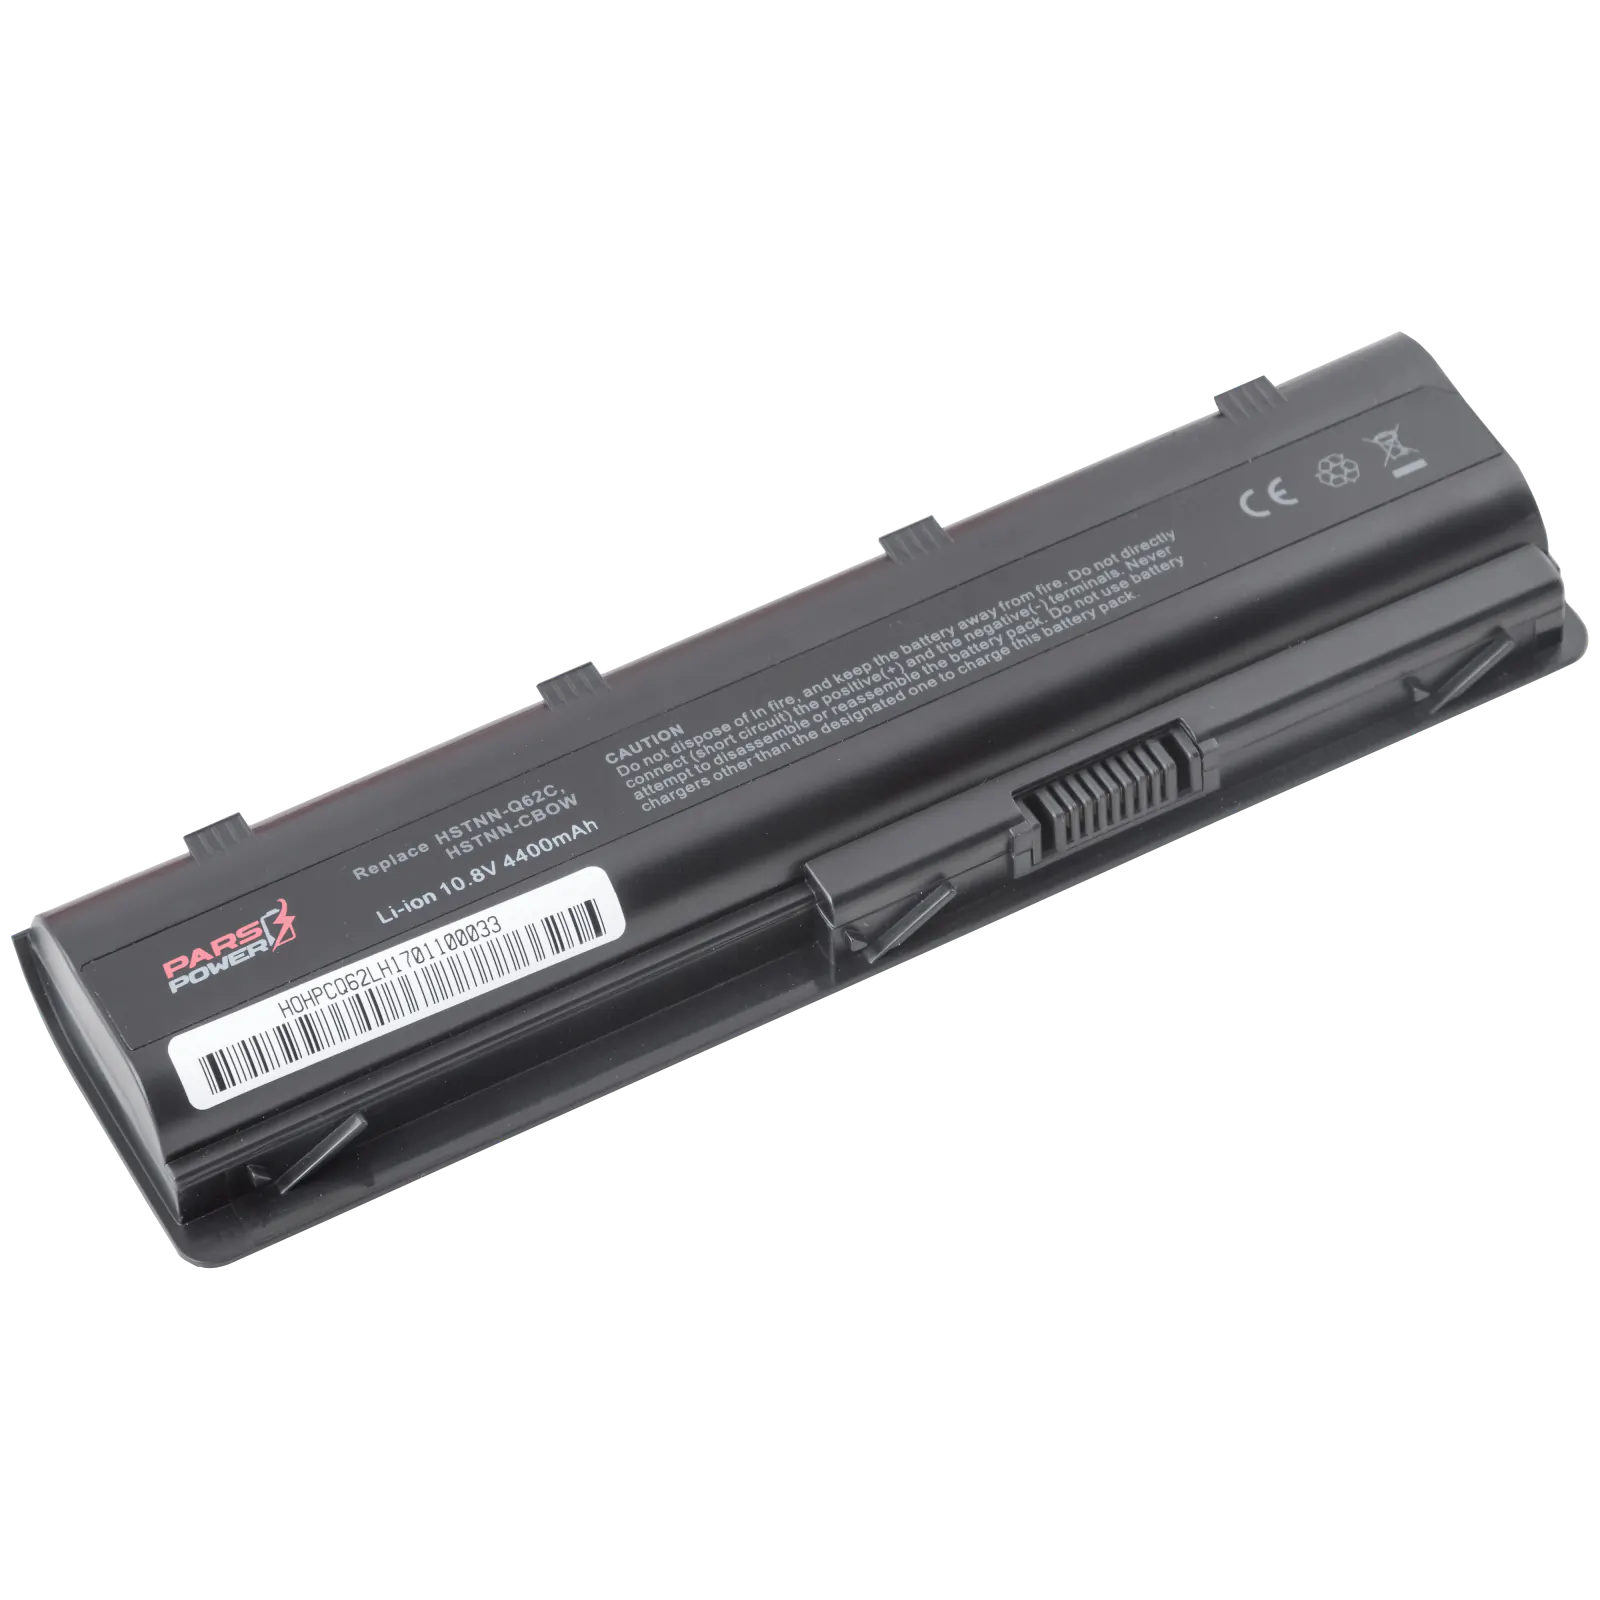 250 G1 H6Q72ES, 250 G1-F2P89UT Notebook Batarya - Pil (Pars Power)